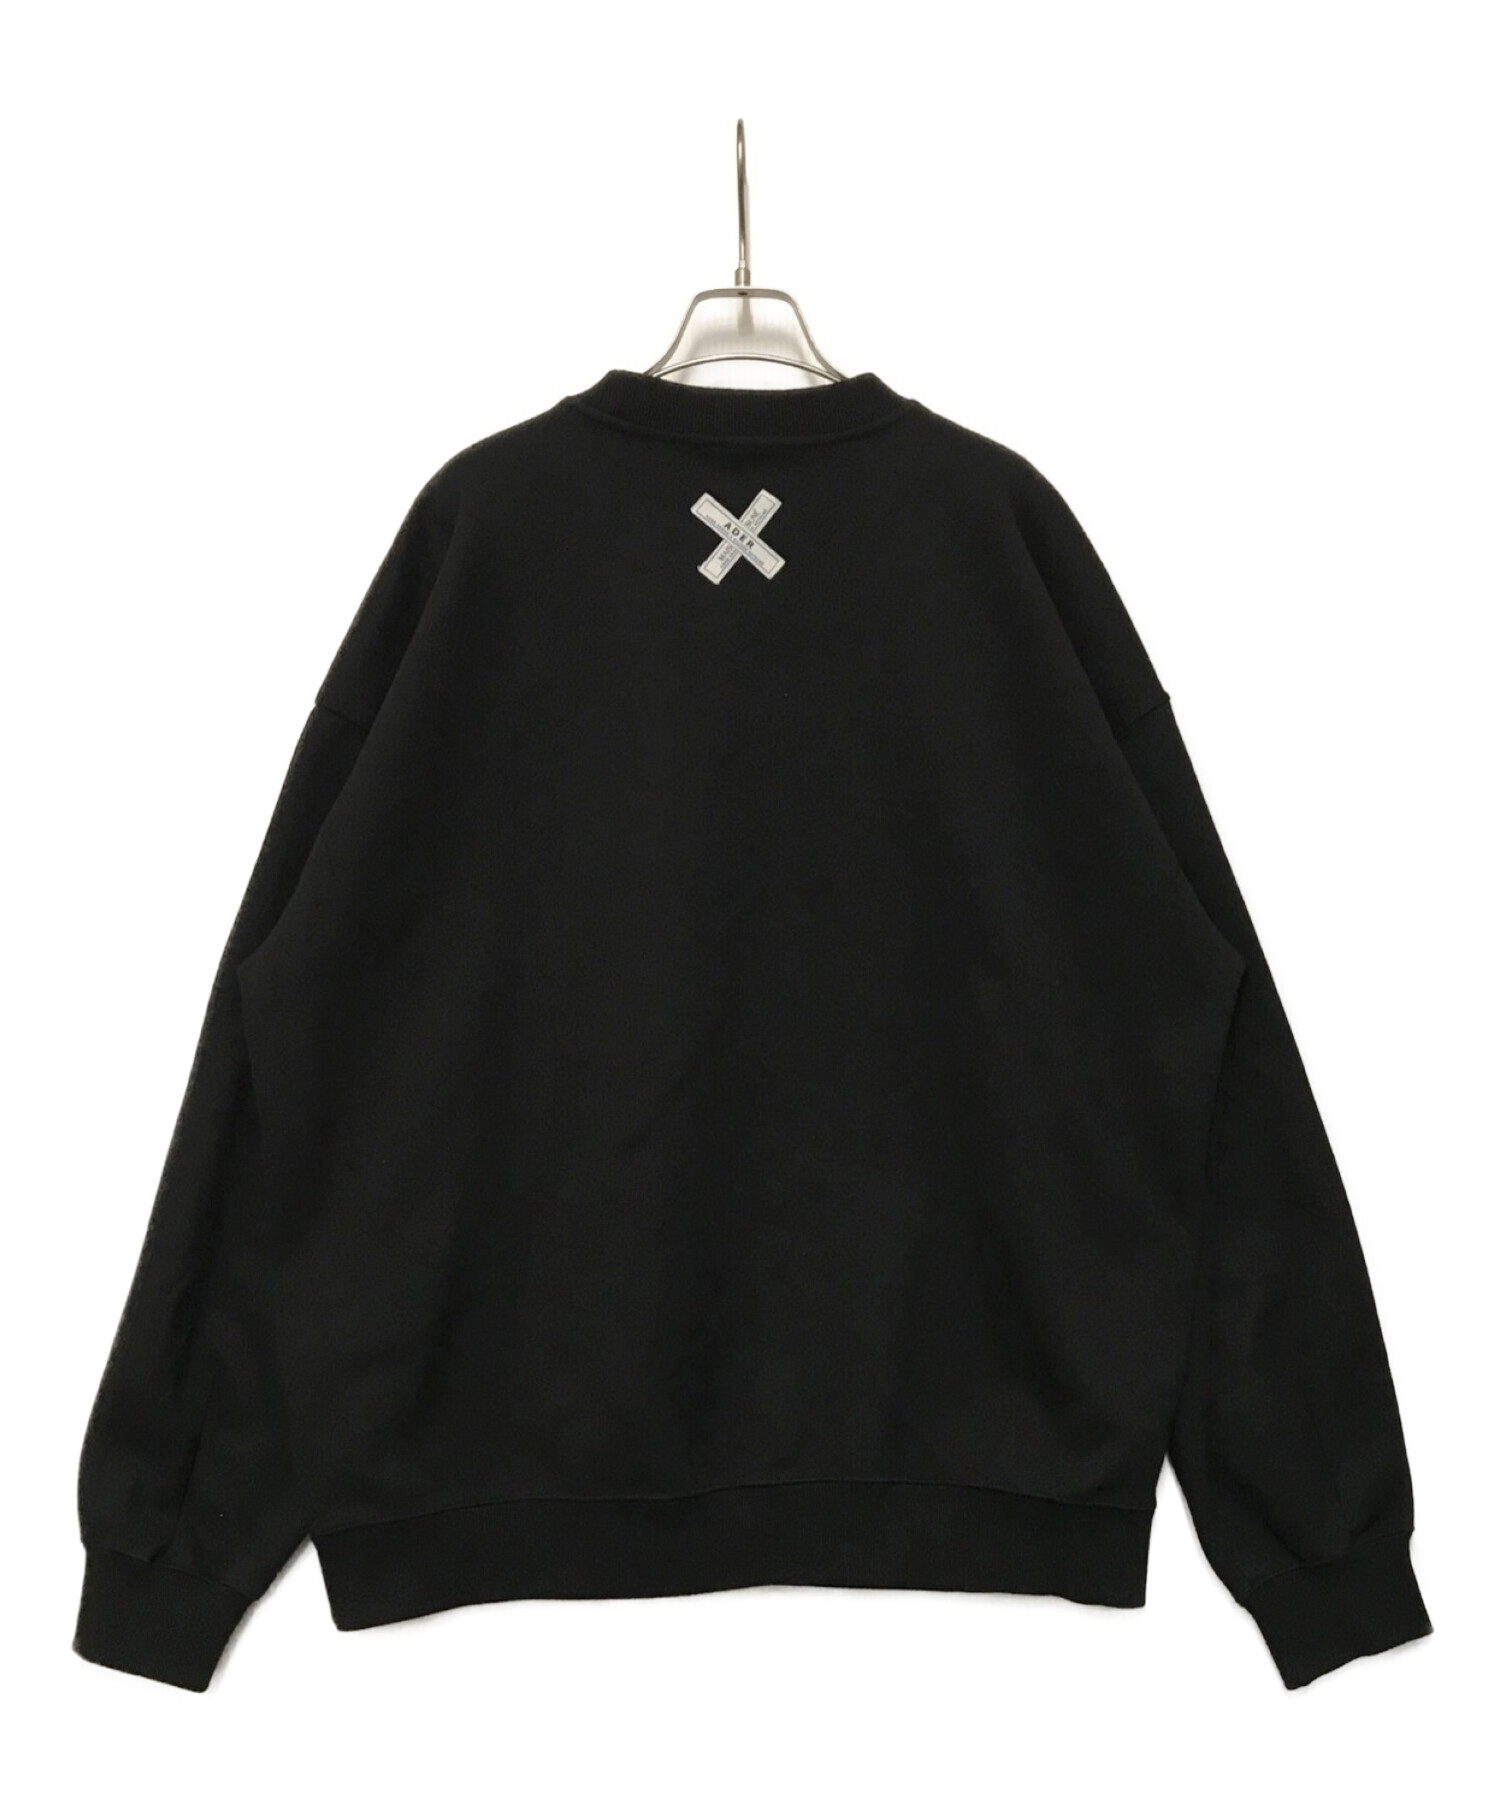 ADER error (アーダーエラー) maison kitsune (メゾンキツネ) A JUMP FOX Sweatshirt ブラック  サイズ:XL